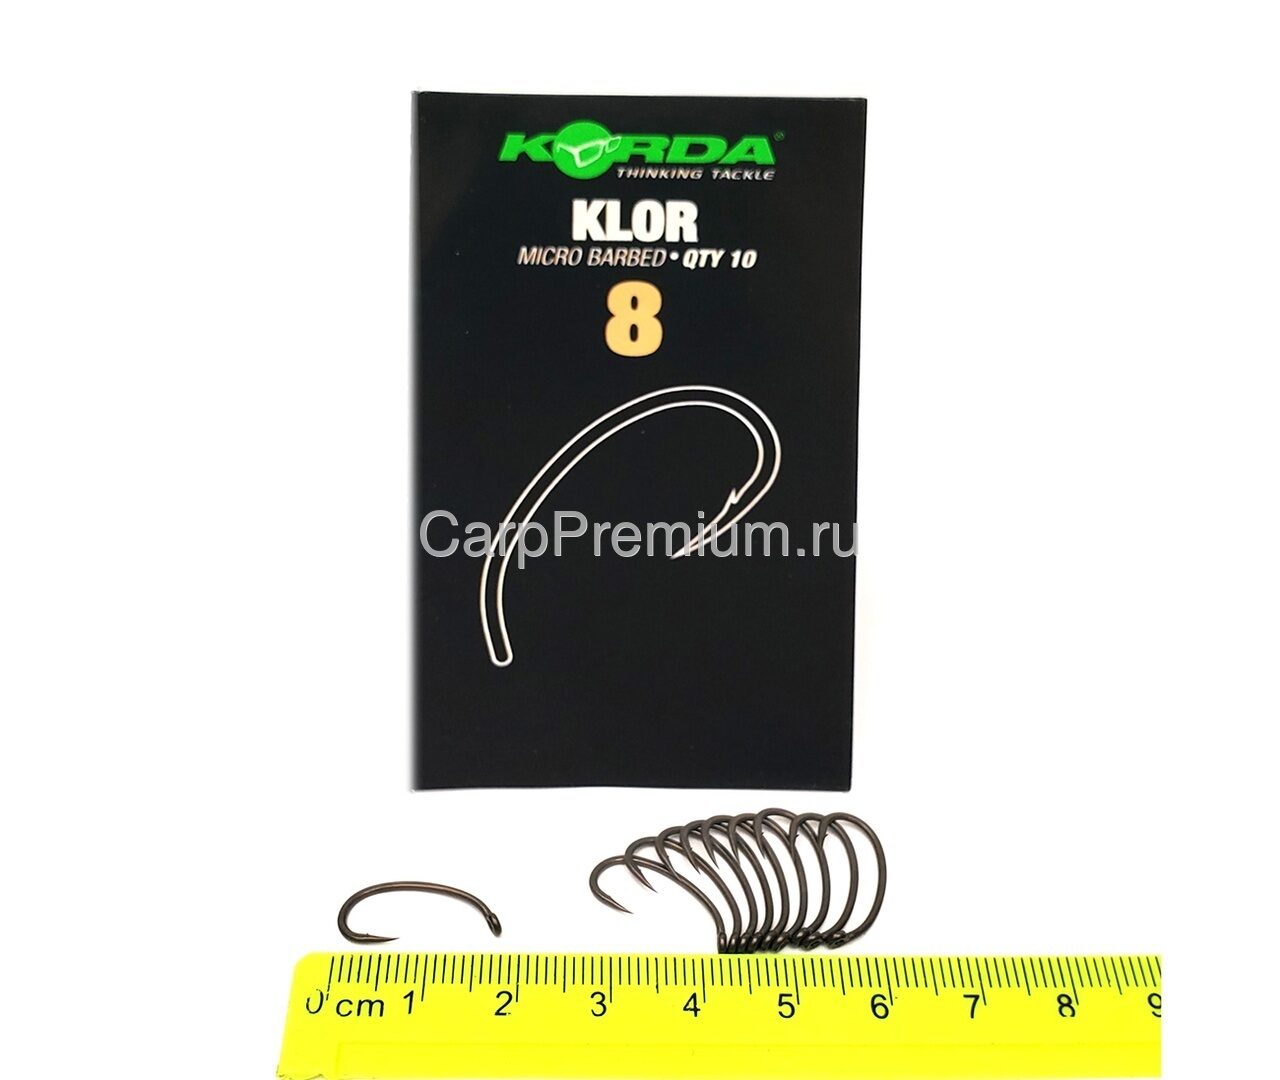 Крючки Korda (Корда) - Klor Micro Barbed, Размер 8, 10 шт